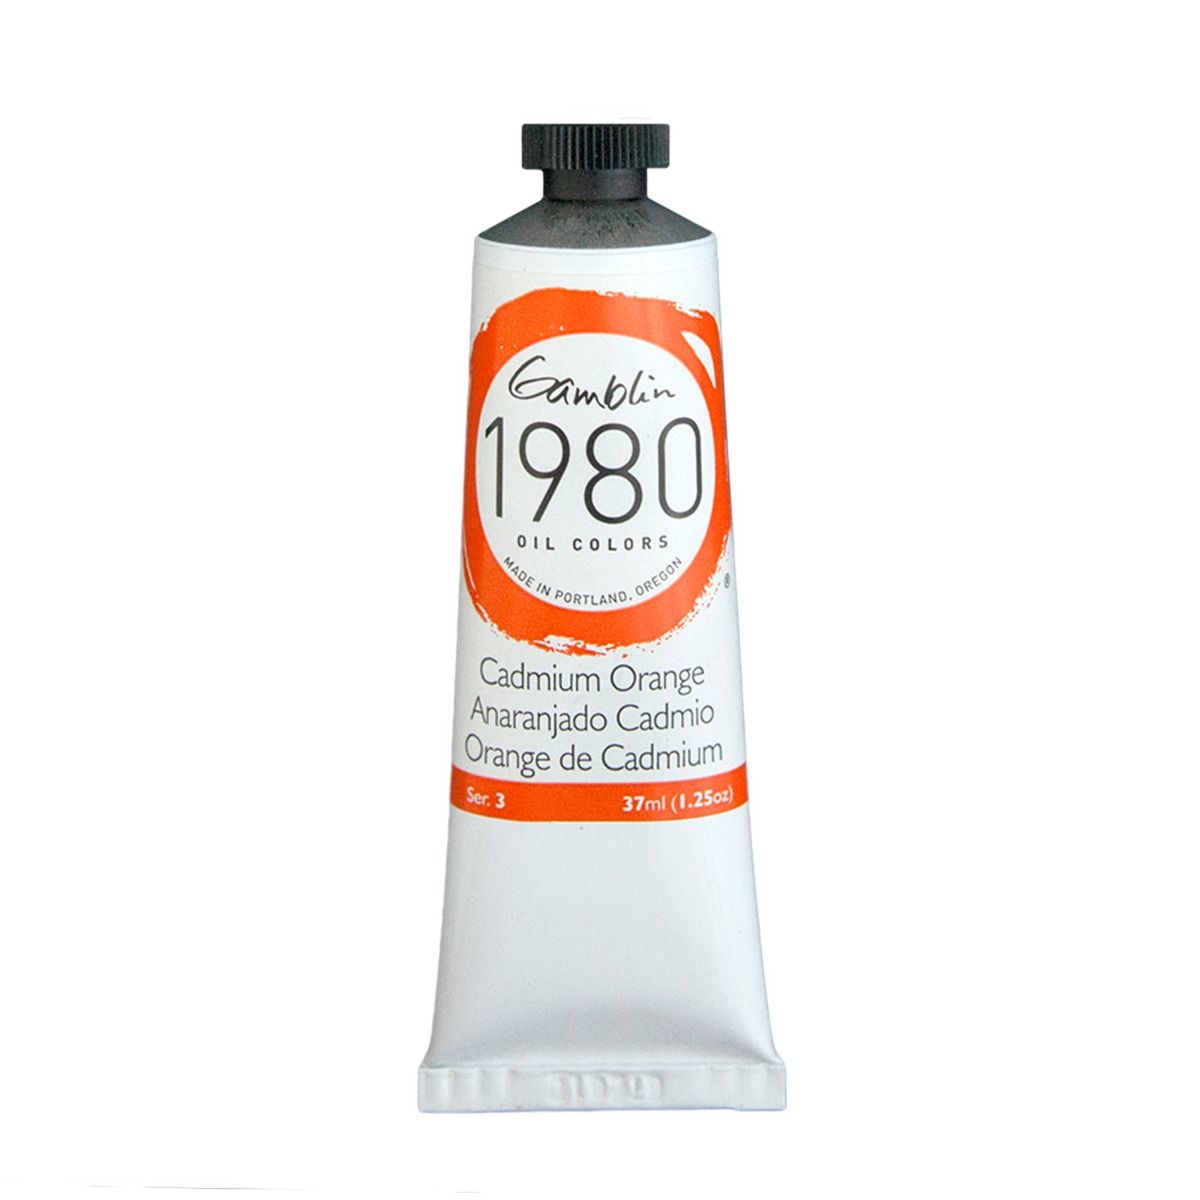 Gamblin 1980 Oils - Cadmium Orange, 37 ml (1.25oz)